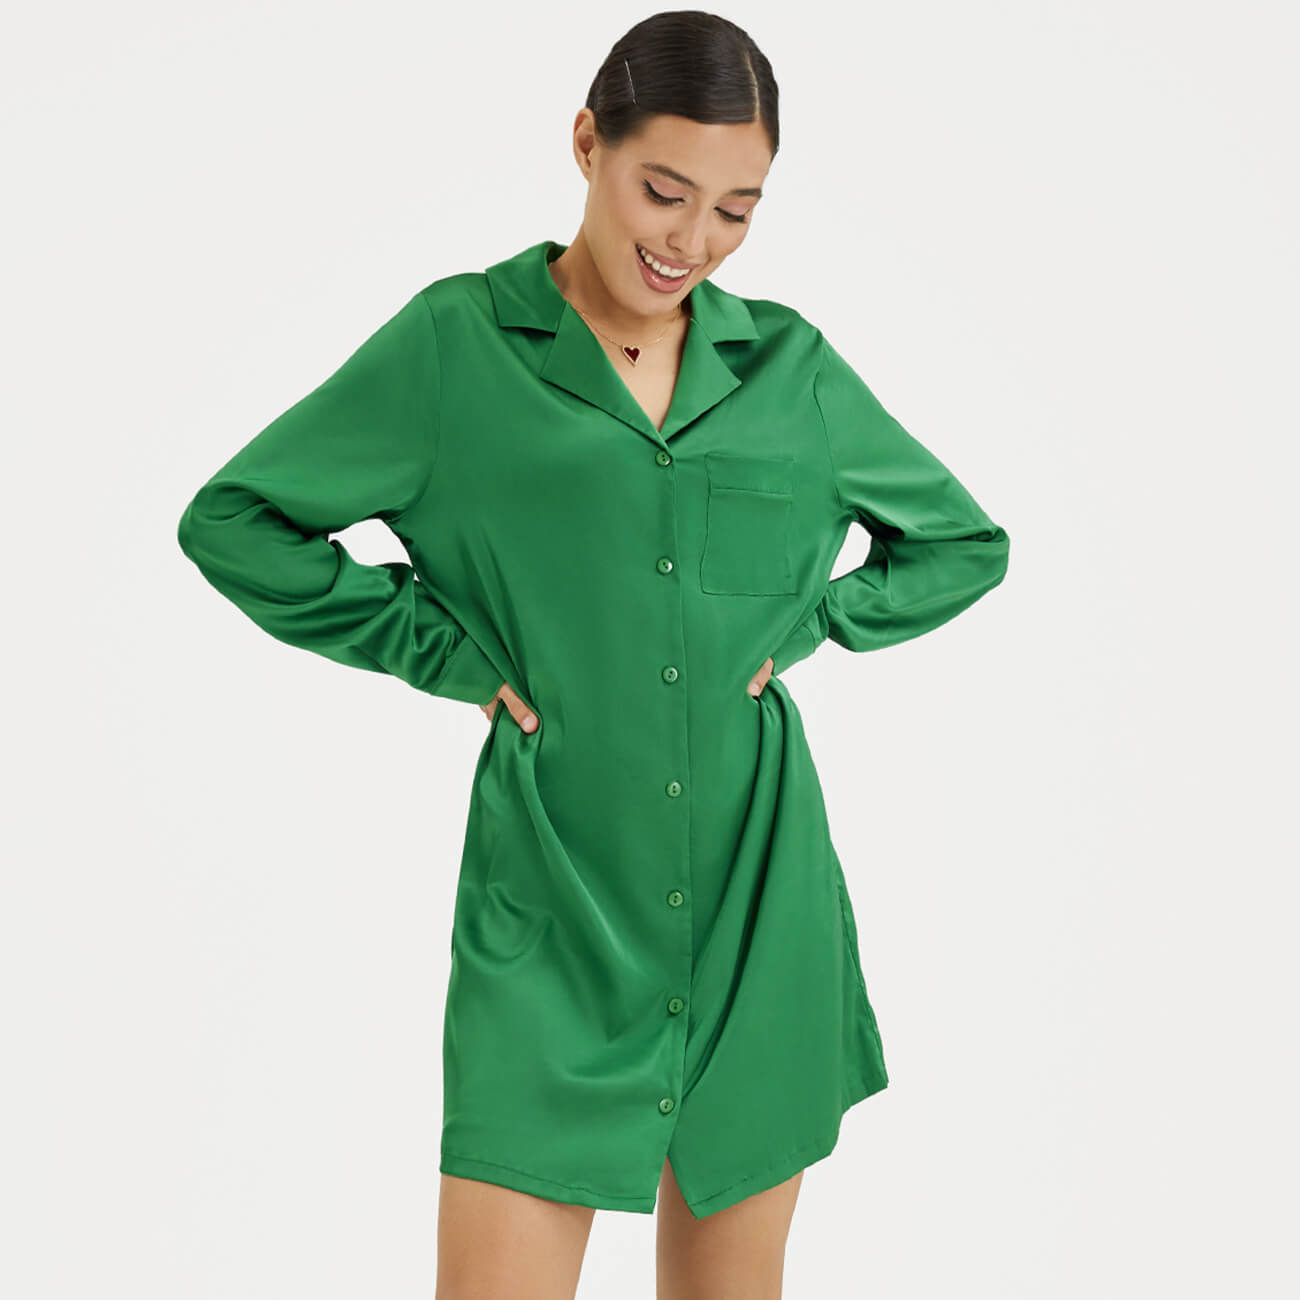 Рубашка женская, р. XL, удлиненная, с длинным рукавом, полиэстер/эластан, зеленая, Madeline рубашка женская р l удлиненная с длинным рукавом полиэстер эластан черная madeline